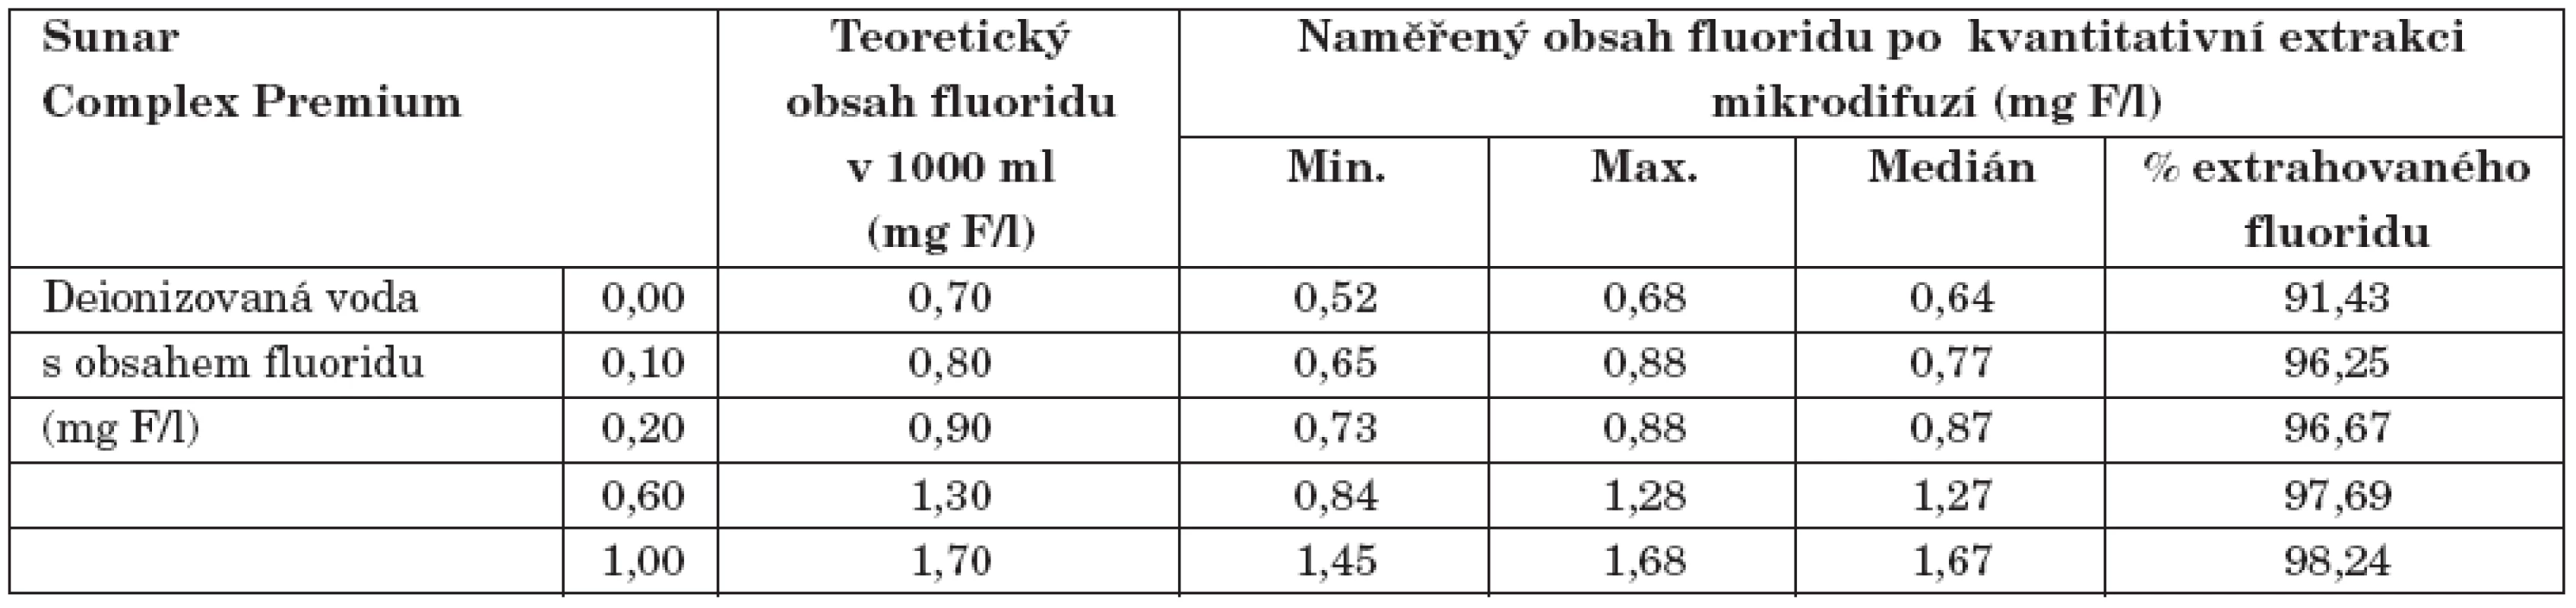 Ztráty fluoridu při kvantitativní extrakci při jeho různém obsahu v solventu při obnovování Sunar Complex Premium.